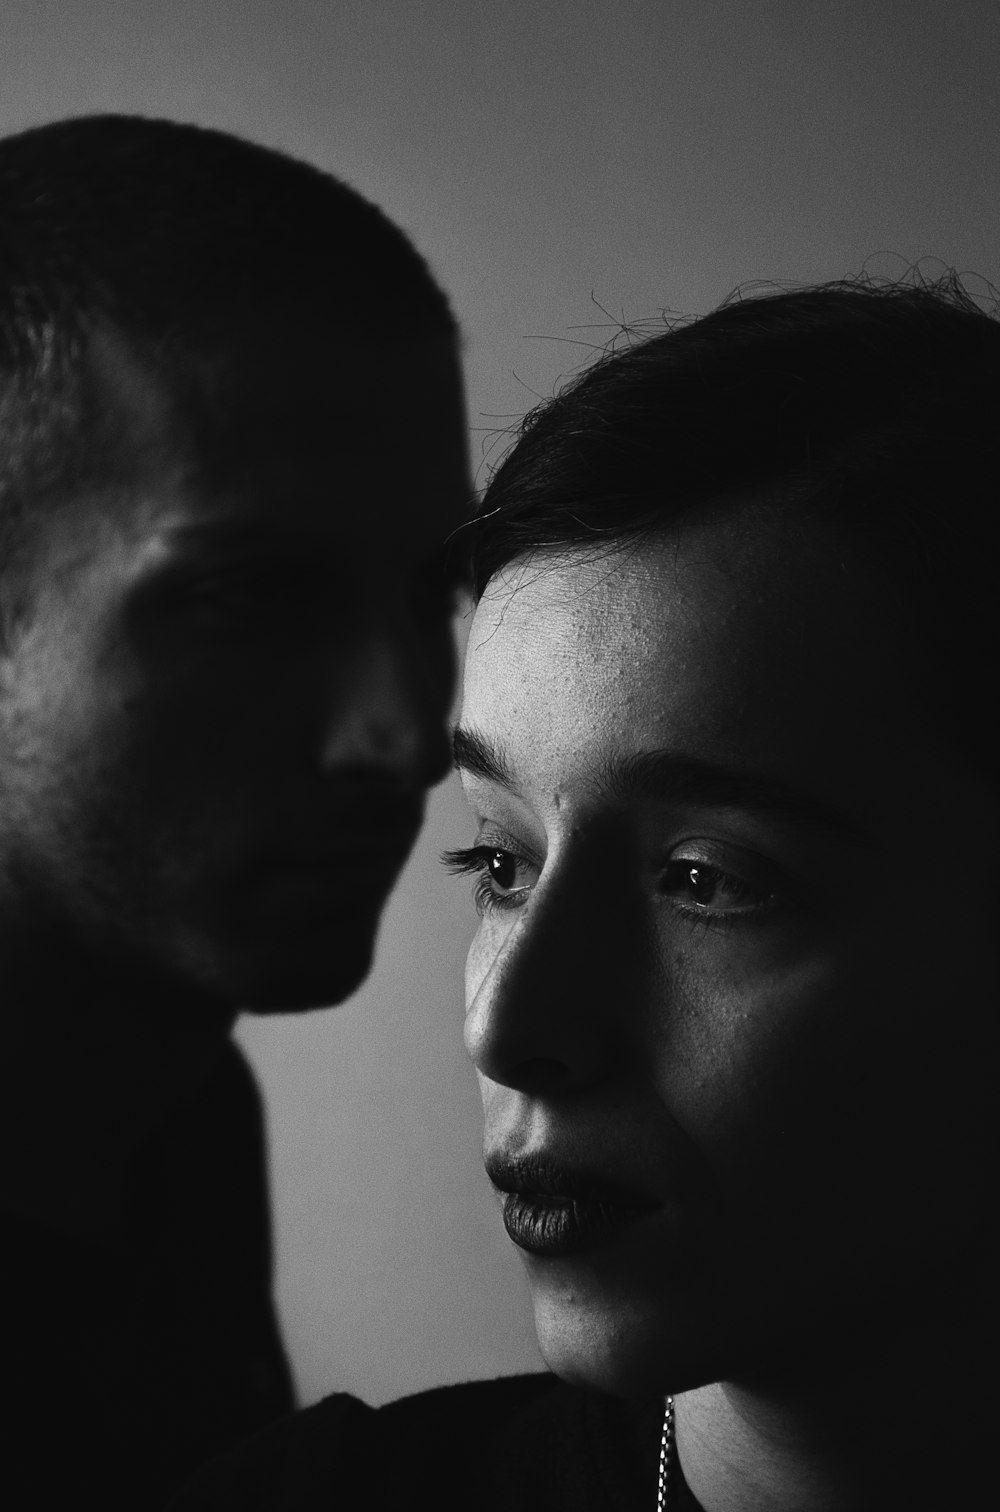 Hombre y mujer en fotografía en escala de grises